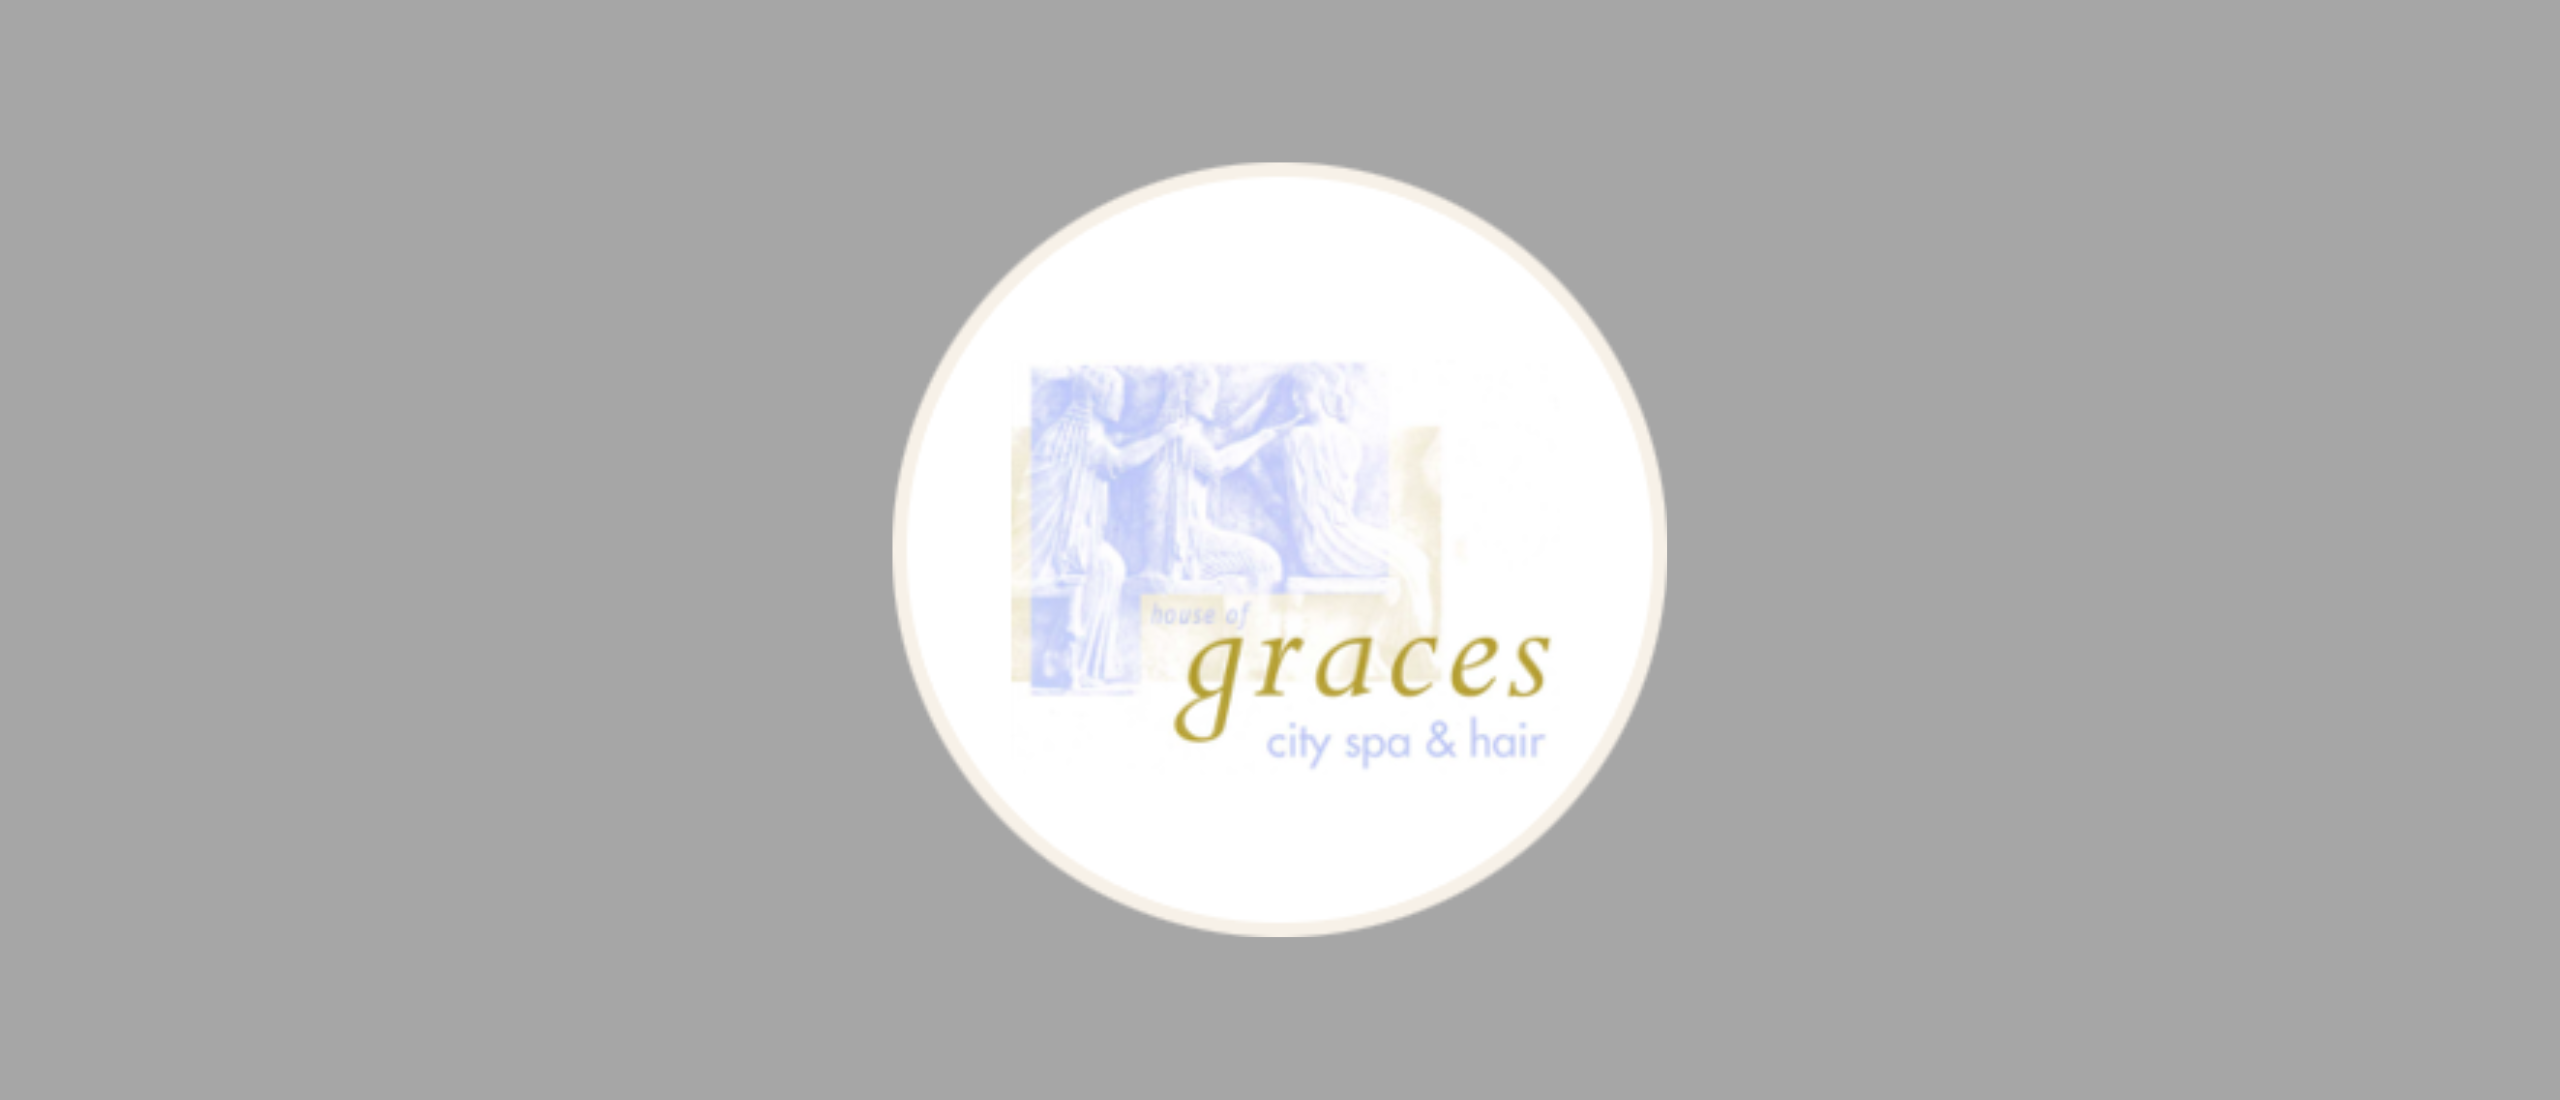 House of Graces: Uw Ultieme Bestemming voor Haar- en Schoonheidsverzorging in Leiden